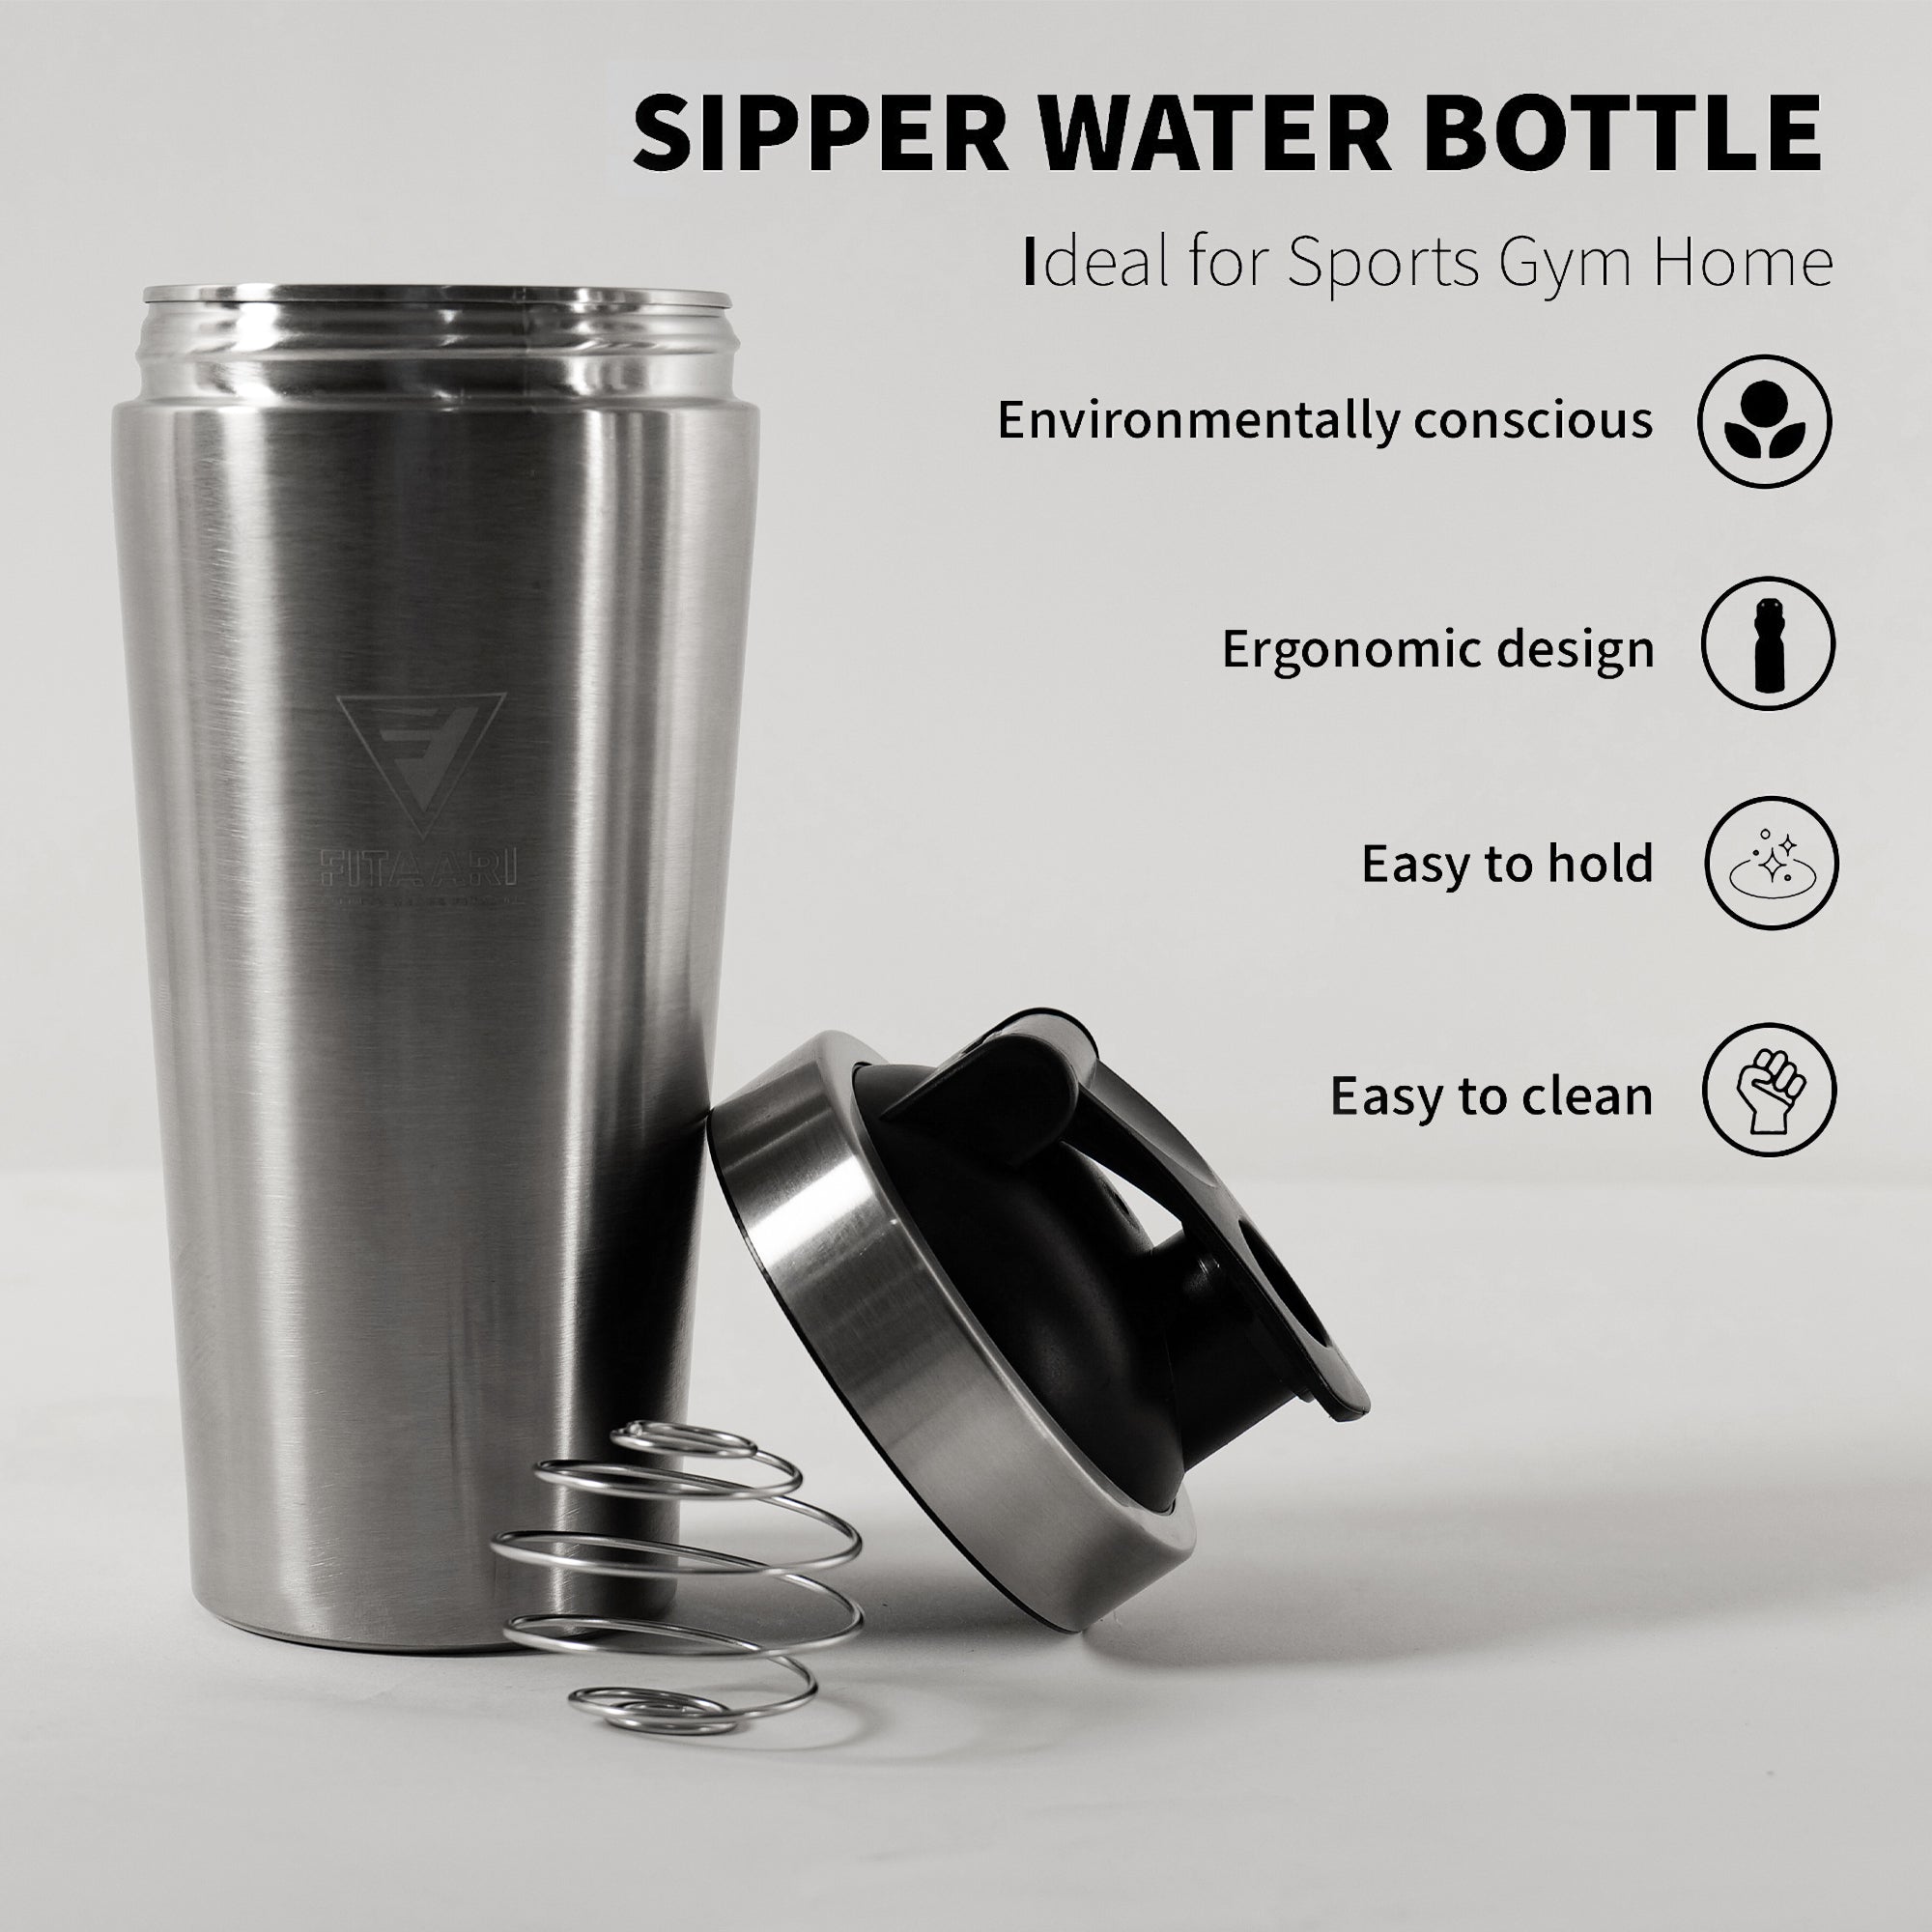 Fitaari Premium Steel Shaker Bottle